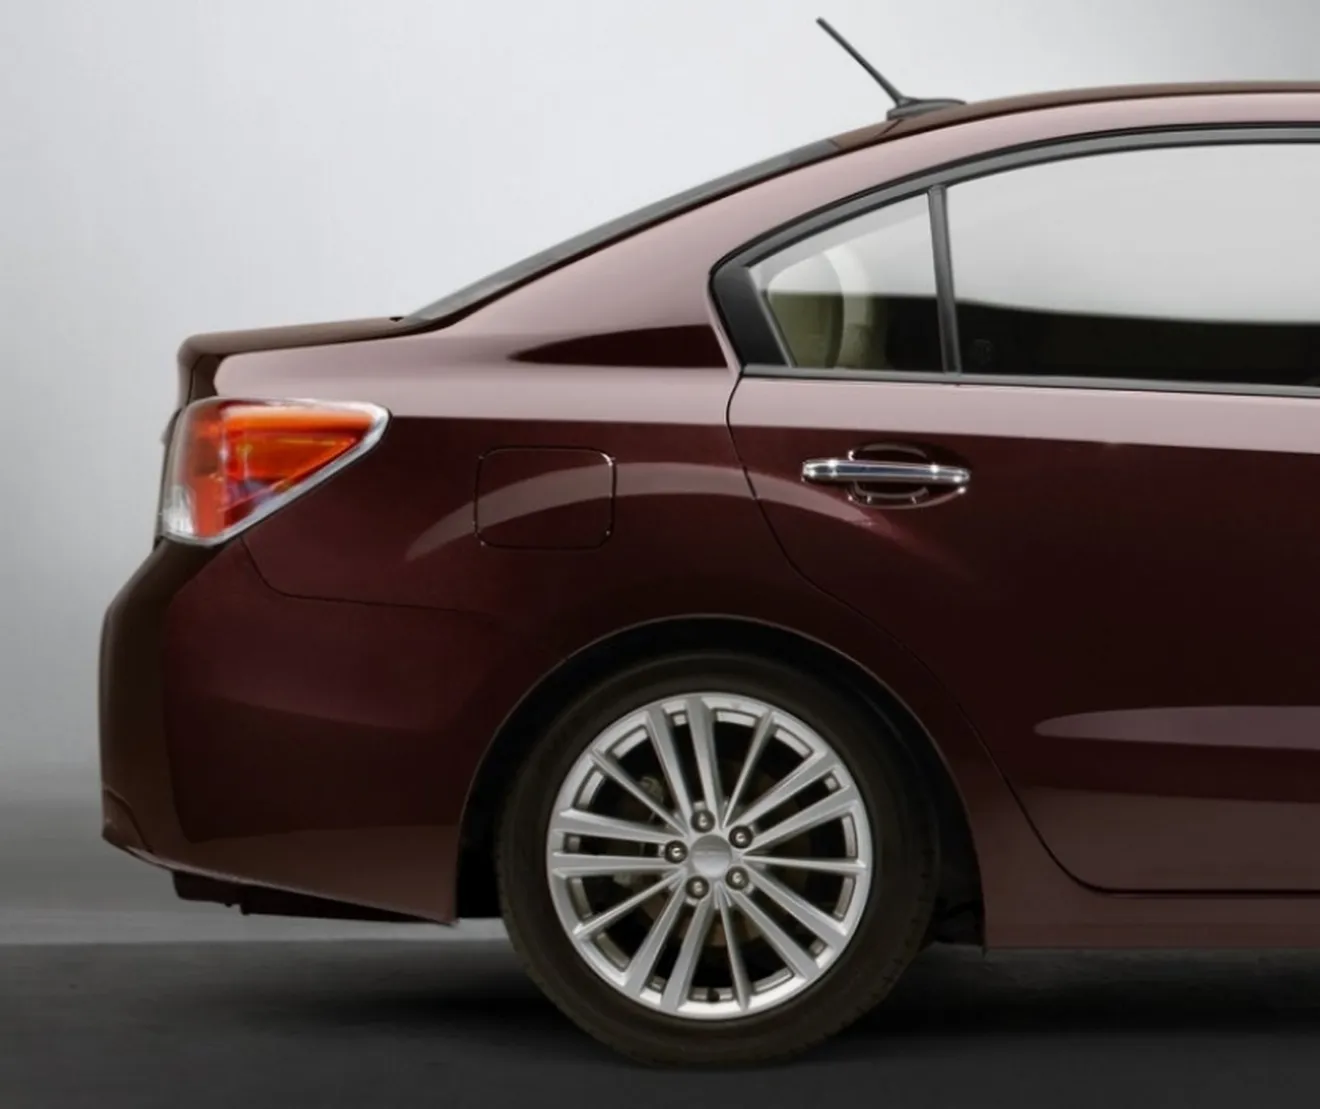 Subaru descubre la vista lateral de su nuevo Impreza 2012